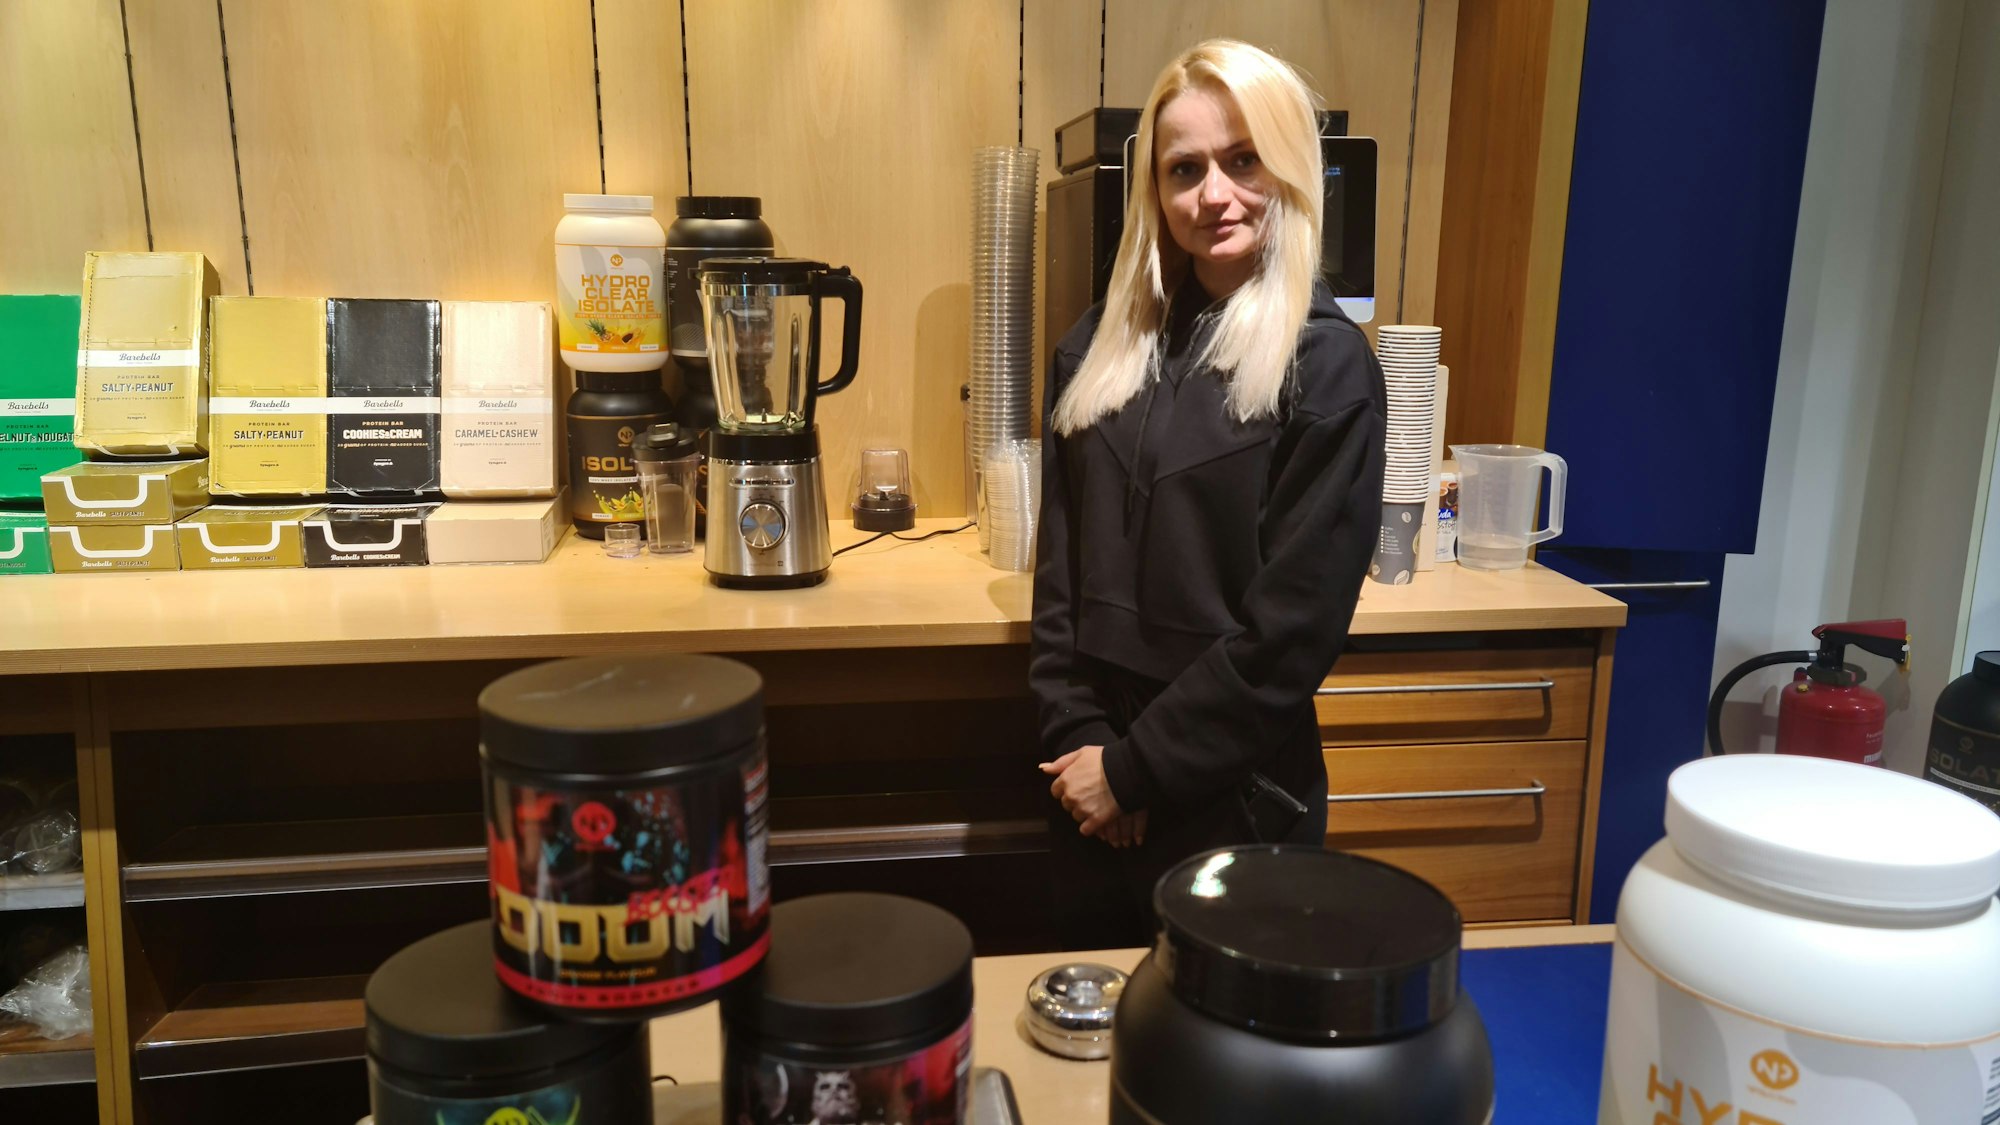 Eine Frau mit blondem langen Haar steht hinter einem Verkaufstresen, auf dem Behälter mit Protein-Pulver stehen.